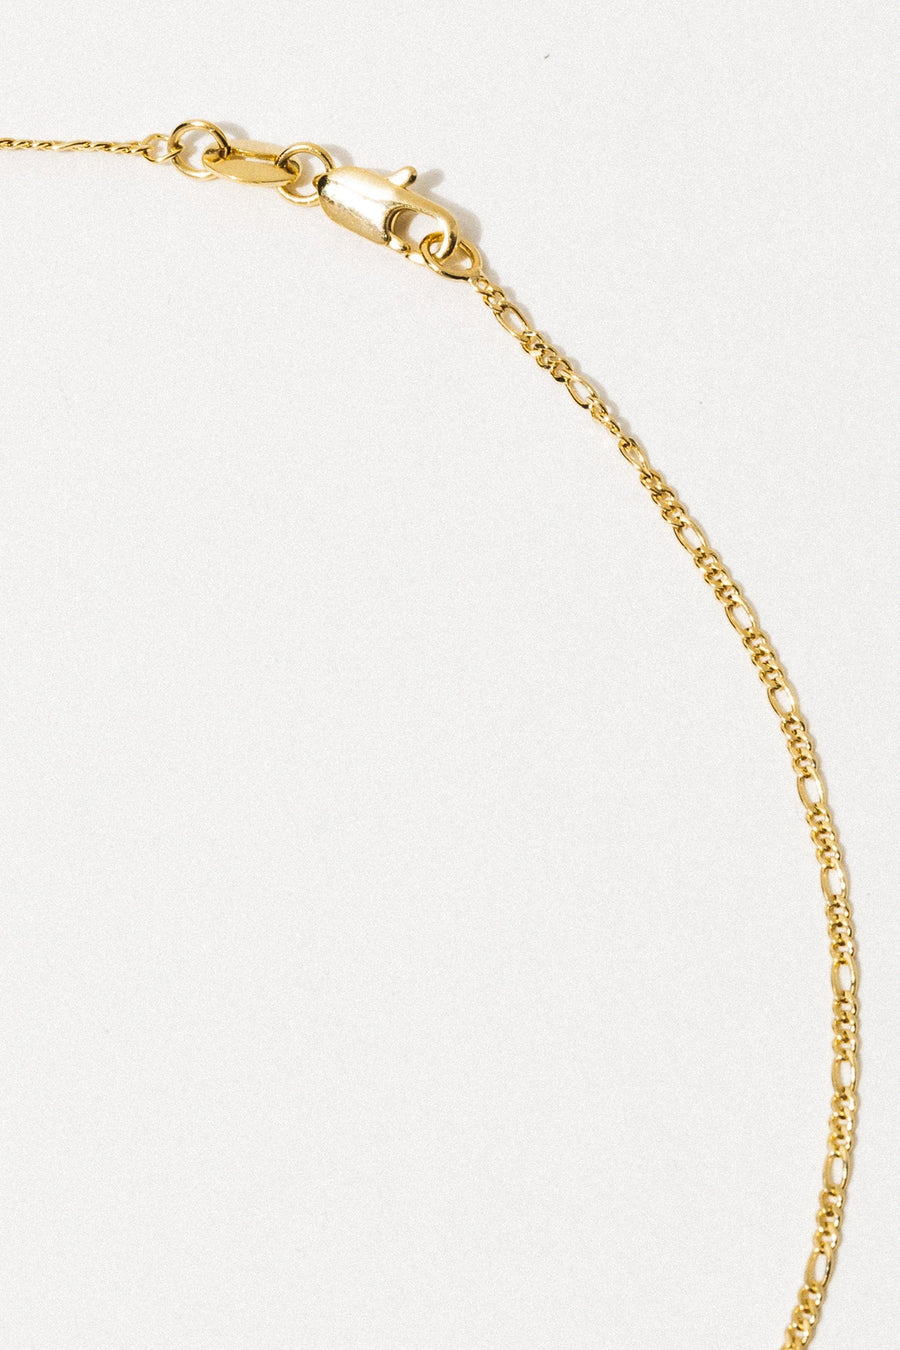 Dona Italia Jewelry Gold / 18 Inches Donatello Giada Necklace